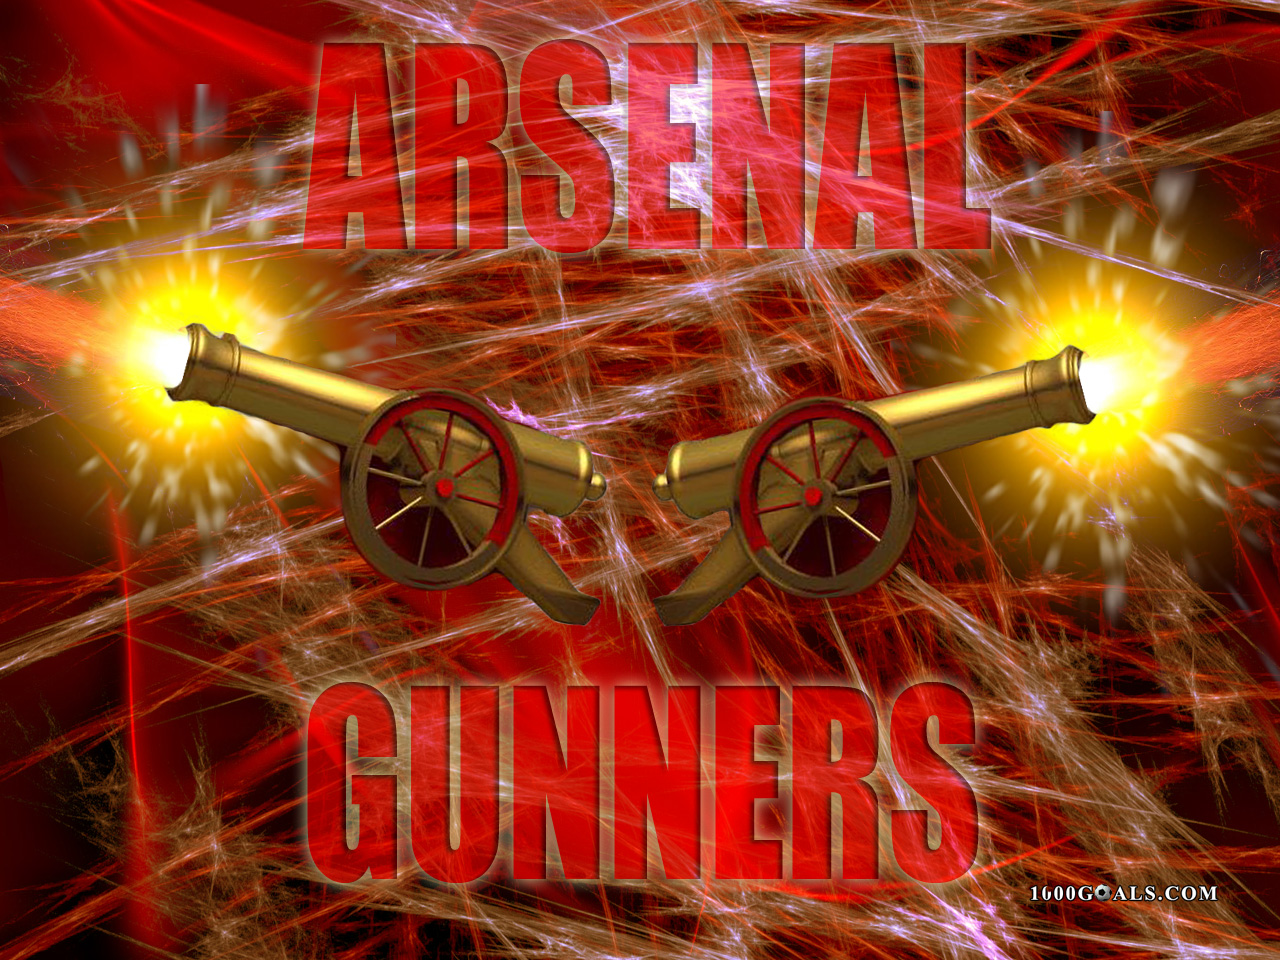 Arsenal Fc Wallpaper Football Goals